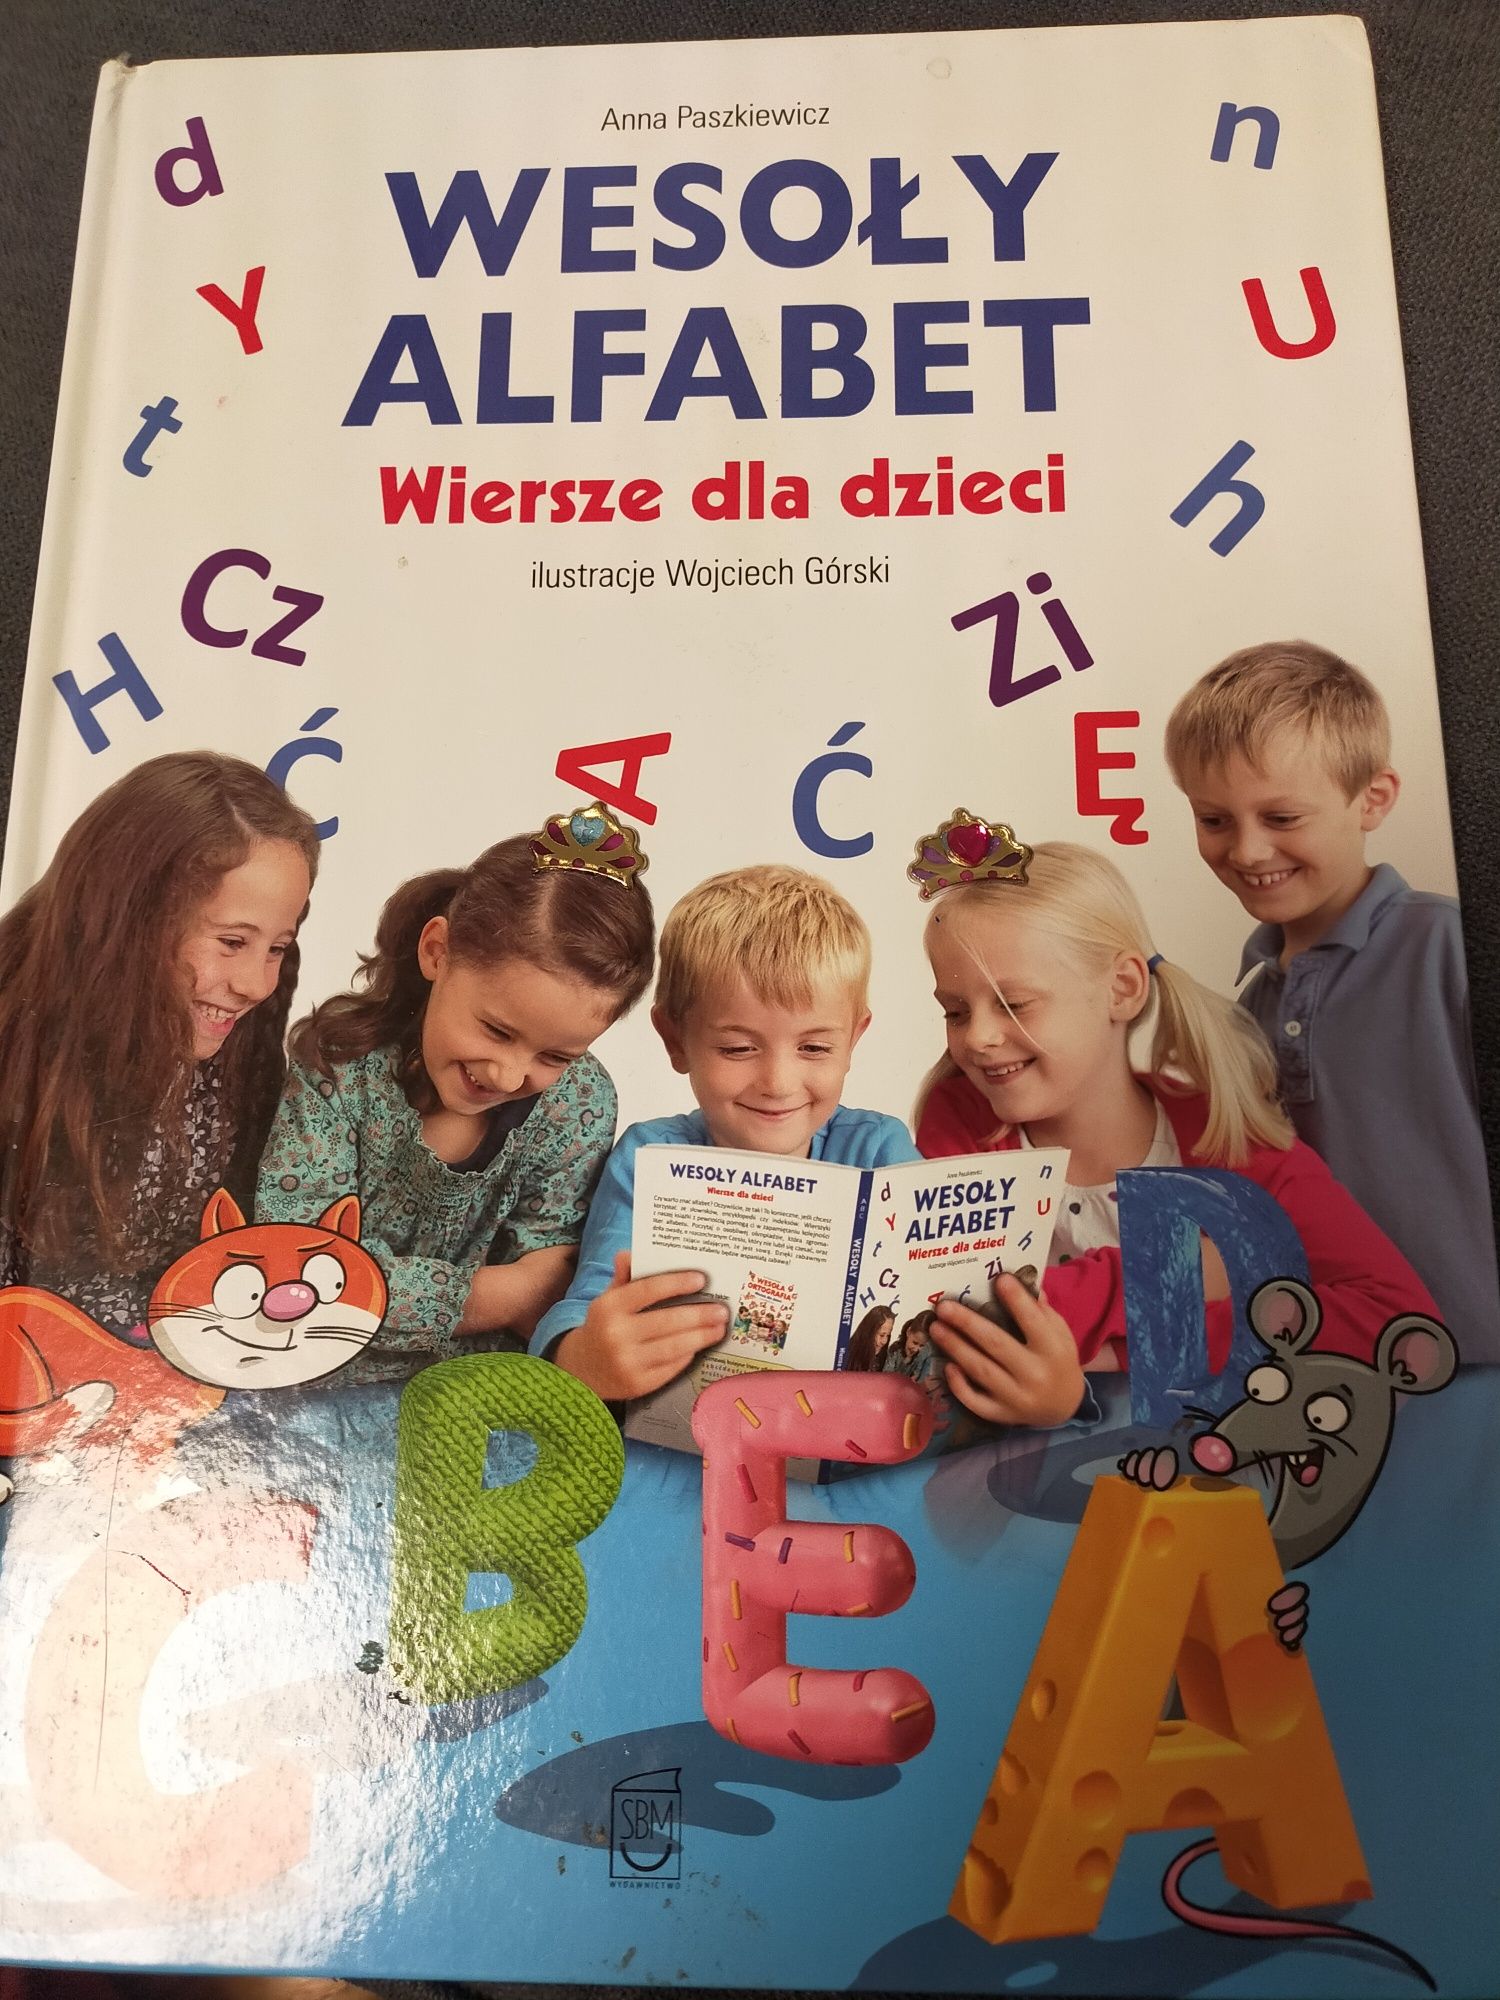 Książka,, Wesoły alfabet" wiersze dla dzieci